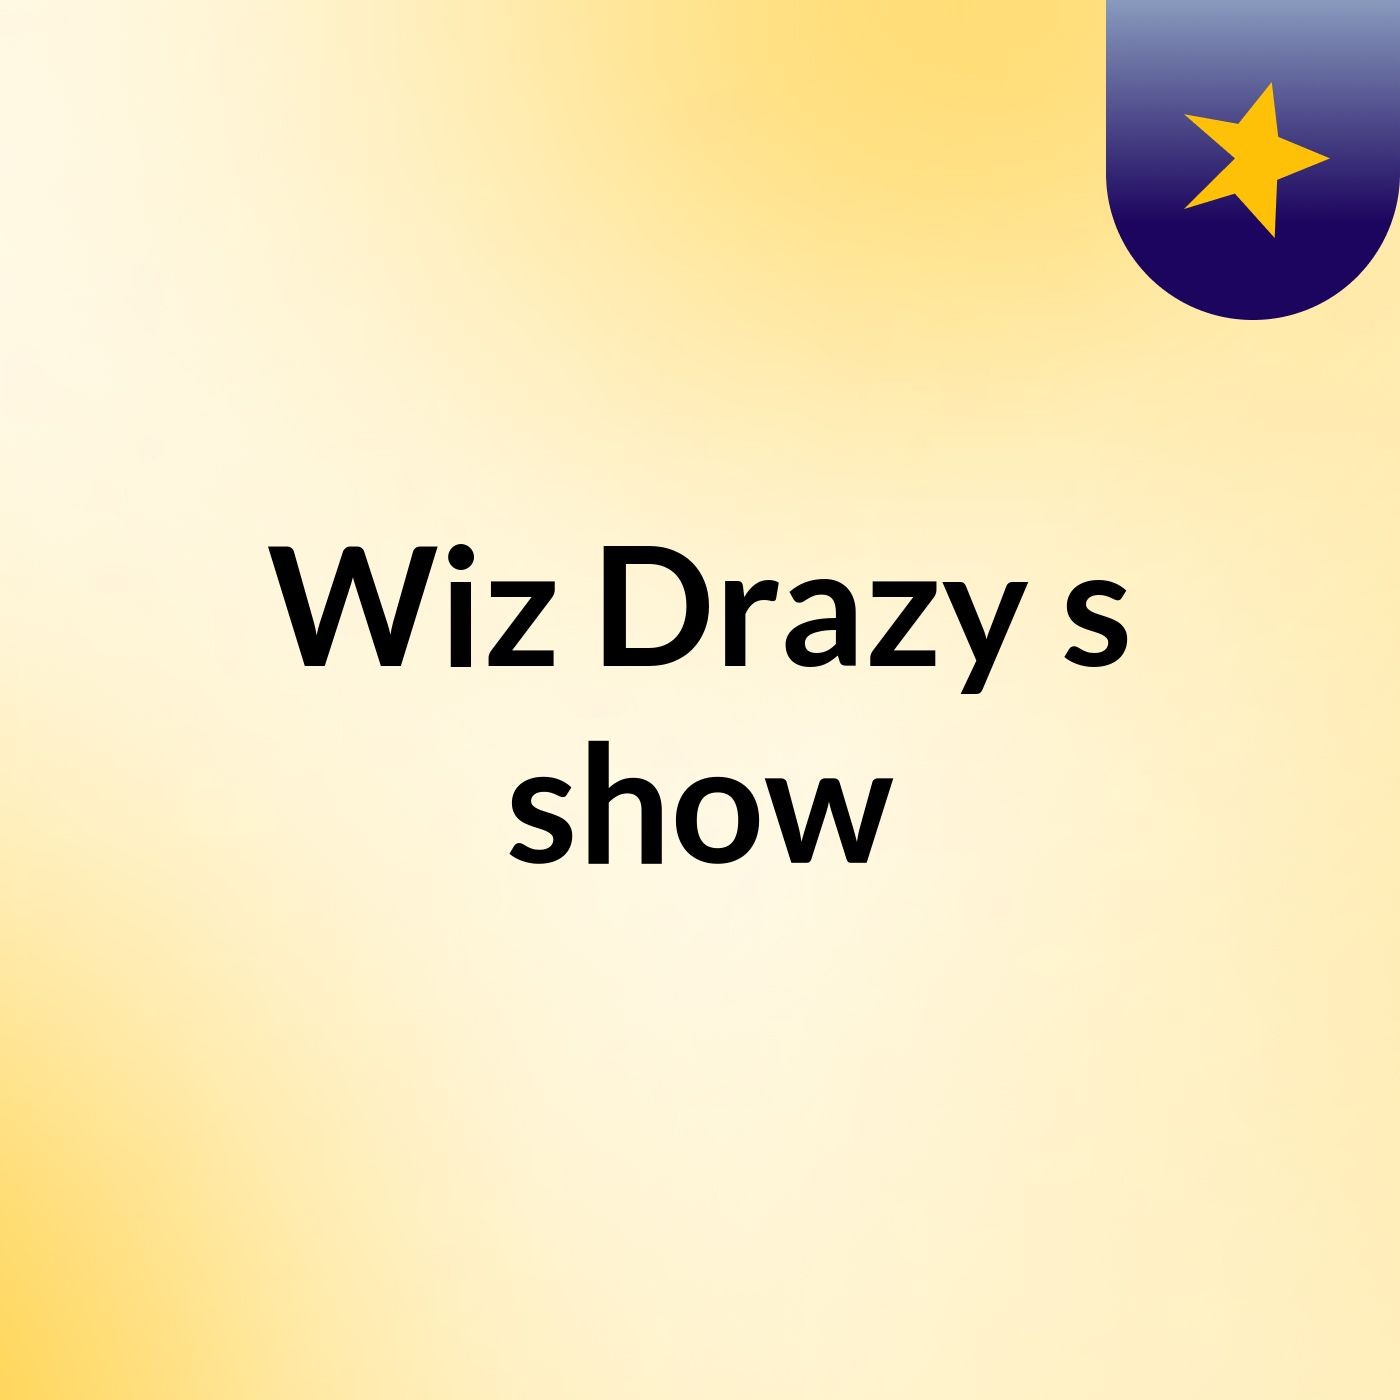 Wiz Drazy's show